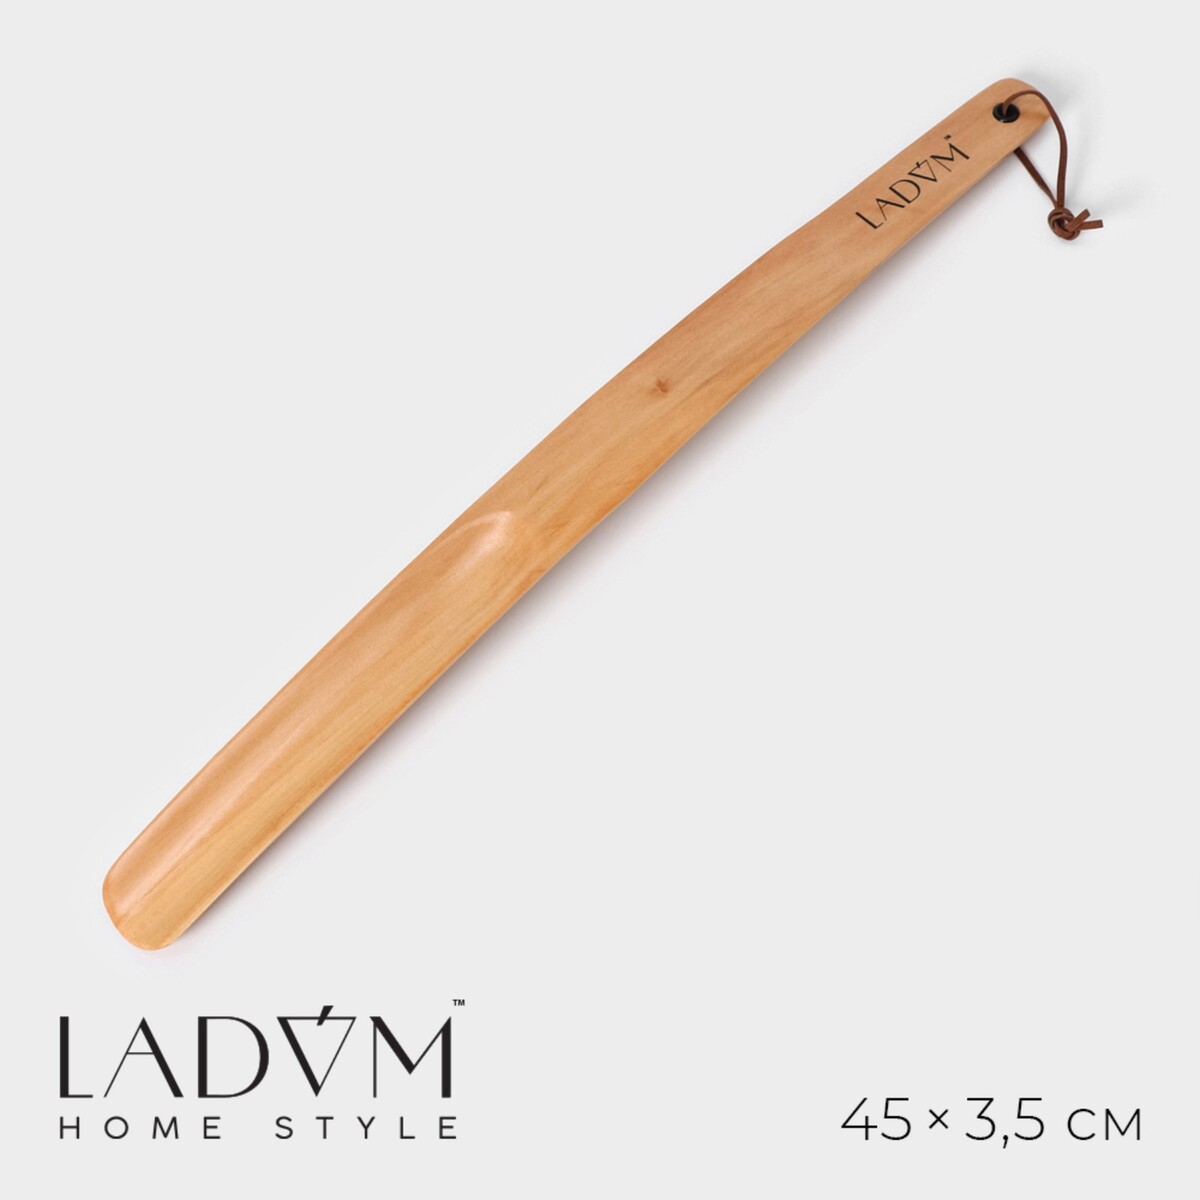 Ложка для обуви деревянная ladо́m, 45×3,5 см деревянная головоломка ложка дёгтя в бочке мёда